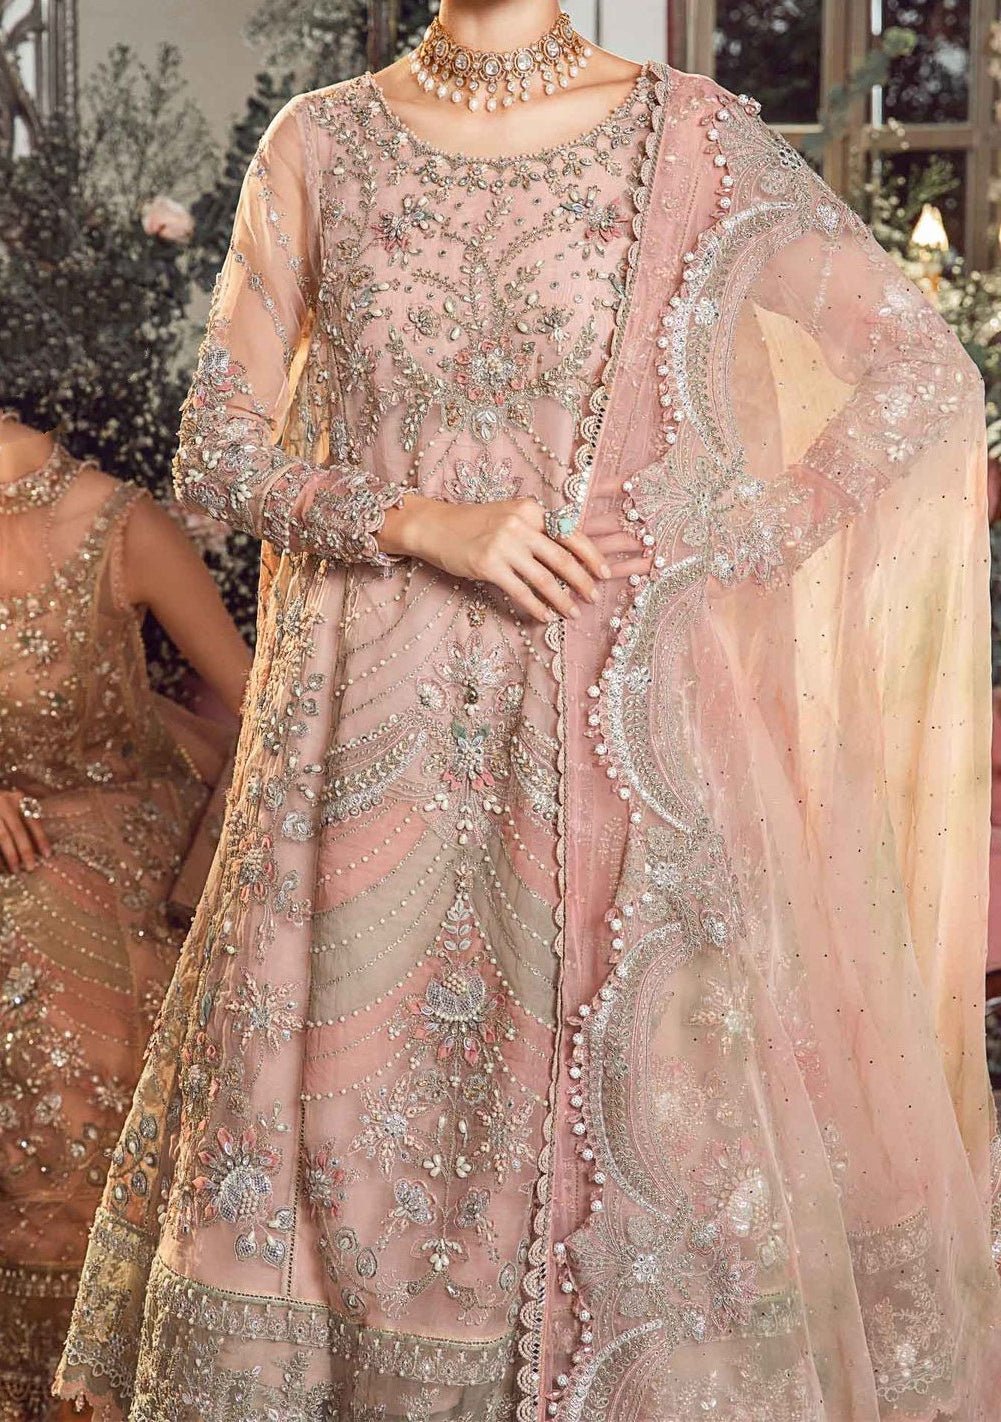 Maria.B Mbroidered Pakistani Organza Lehenga Suit - db24594